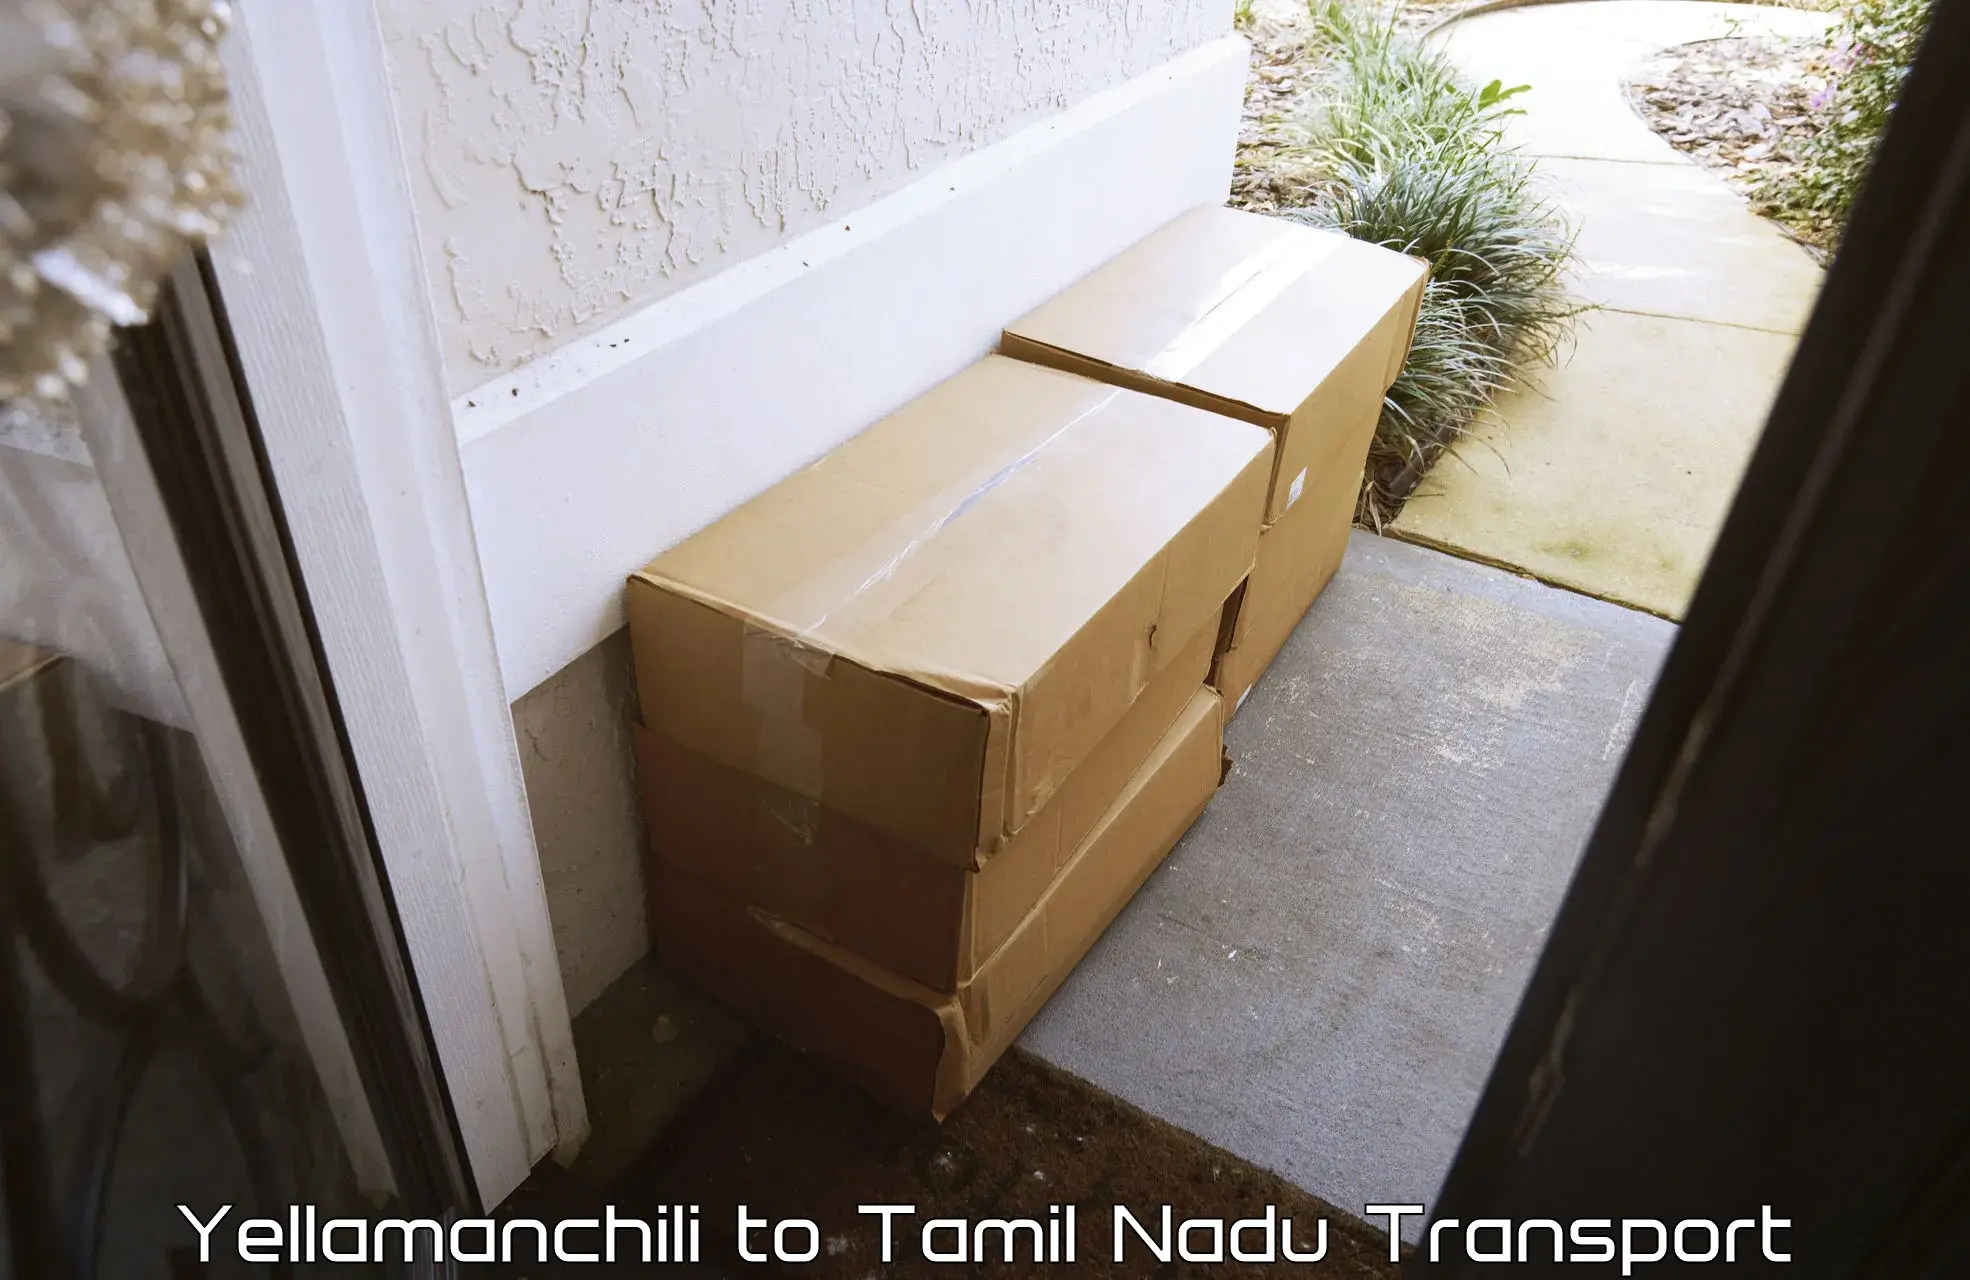 Cycle transportation service Yellamanchili to University of Madras Chennai